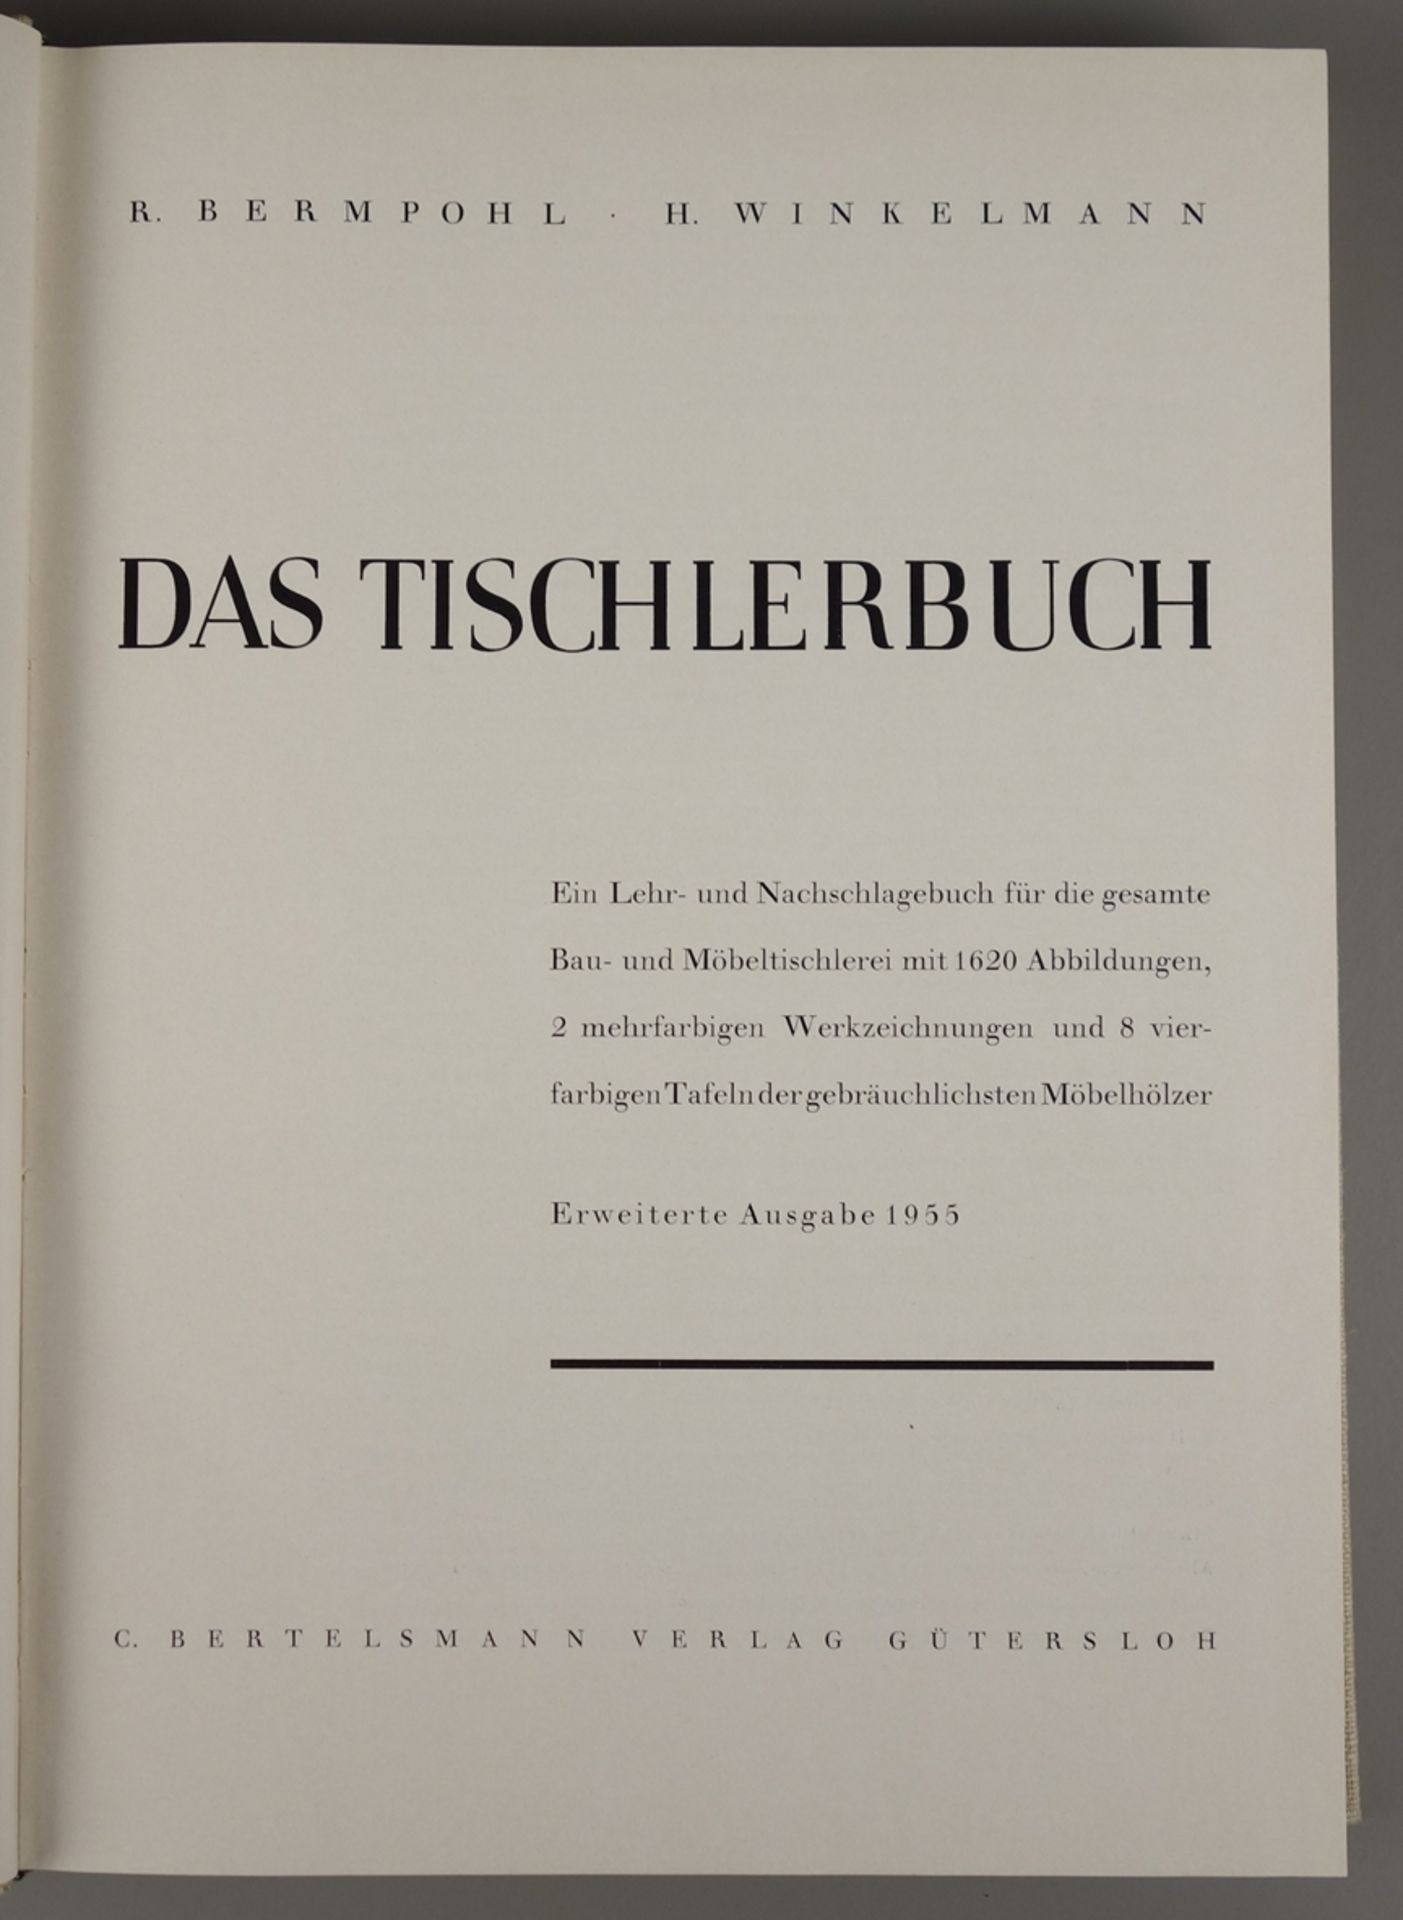 Das Tischlerbuch,  R.Bermpohl und H.Winkelmann, 1955